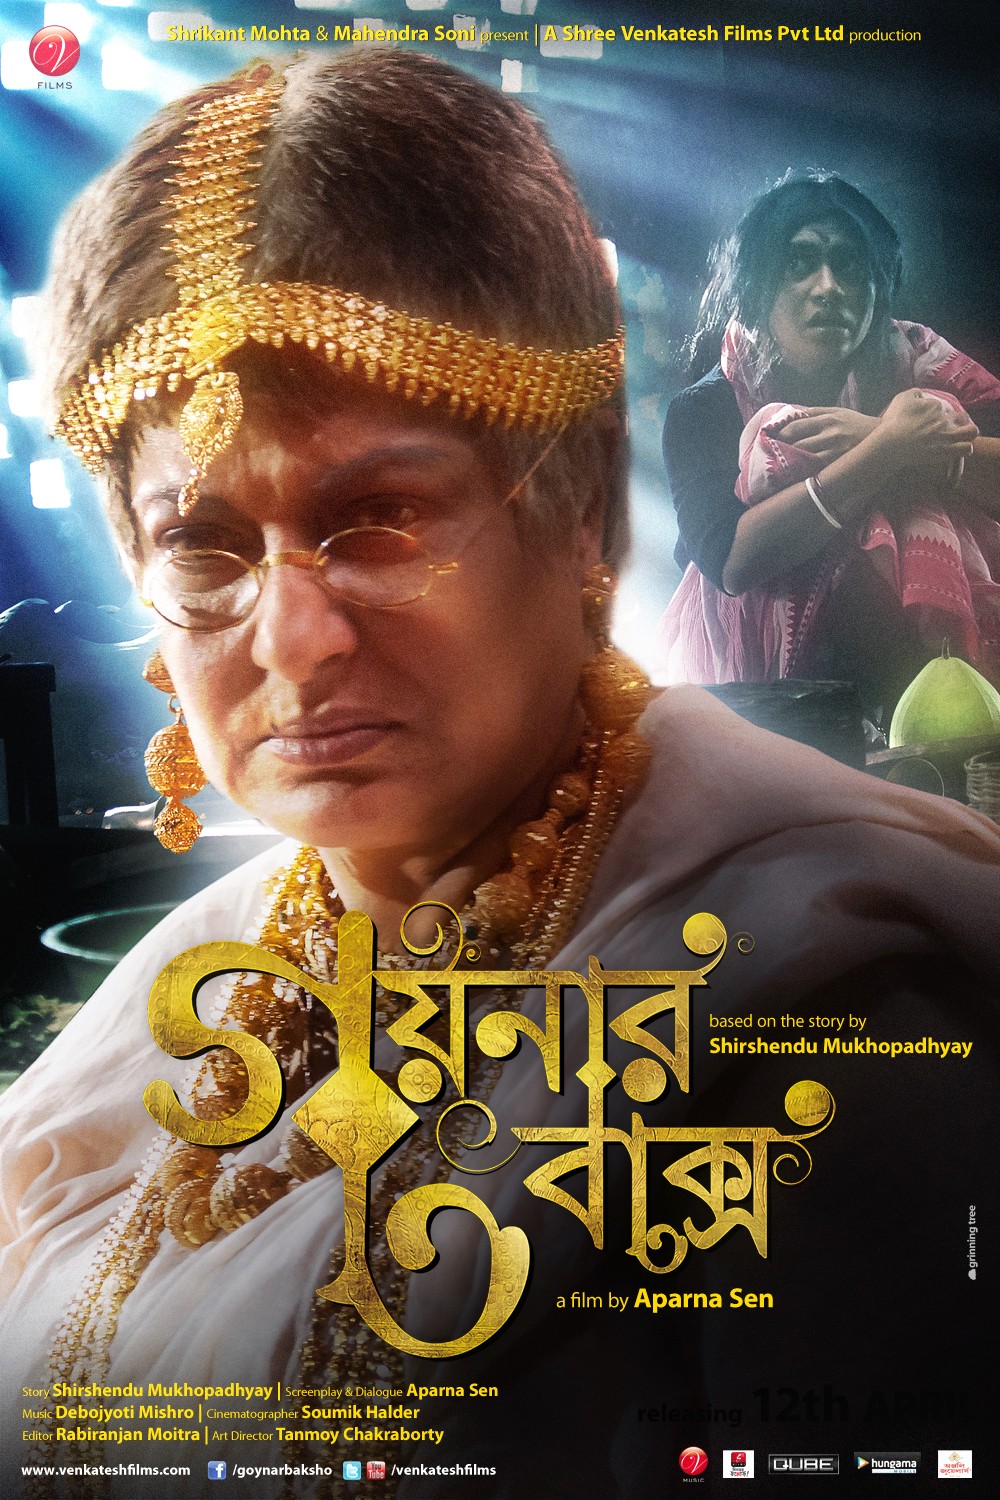 Extra Large Movie Poster Image for Goynar Baksho (#5 of 6)